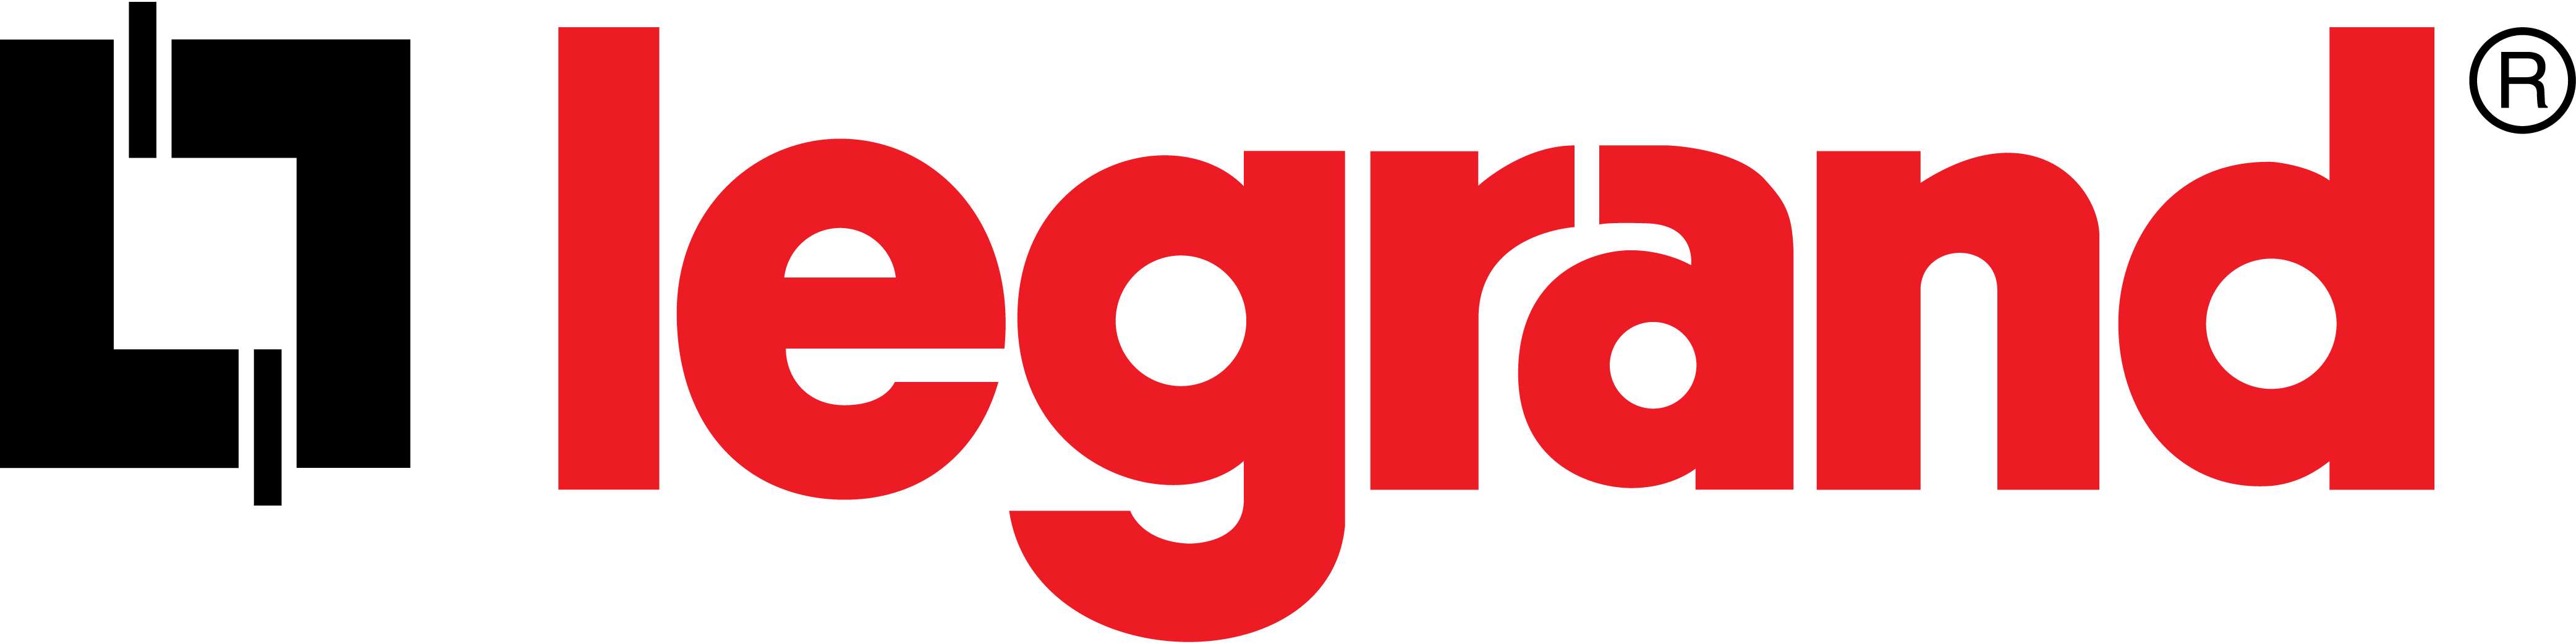 Legrand - Elektrox